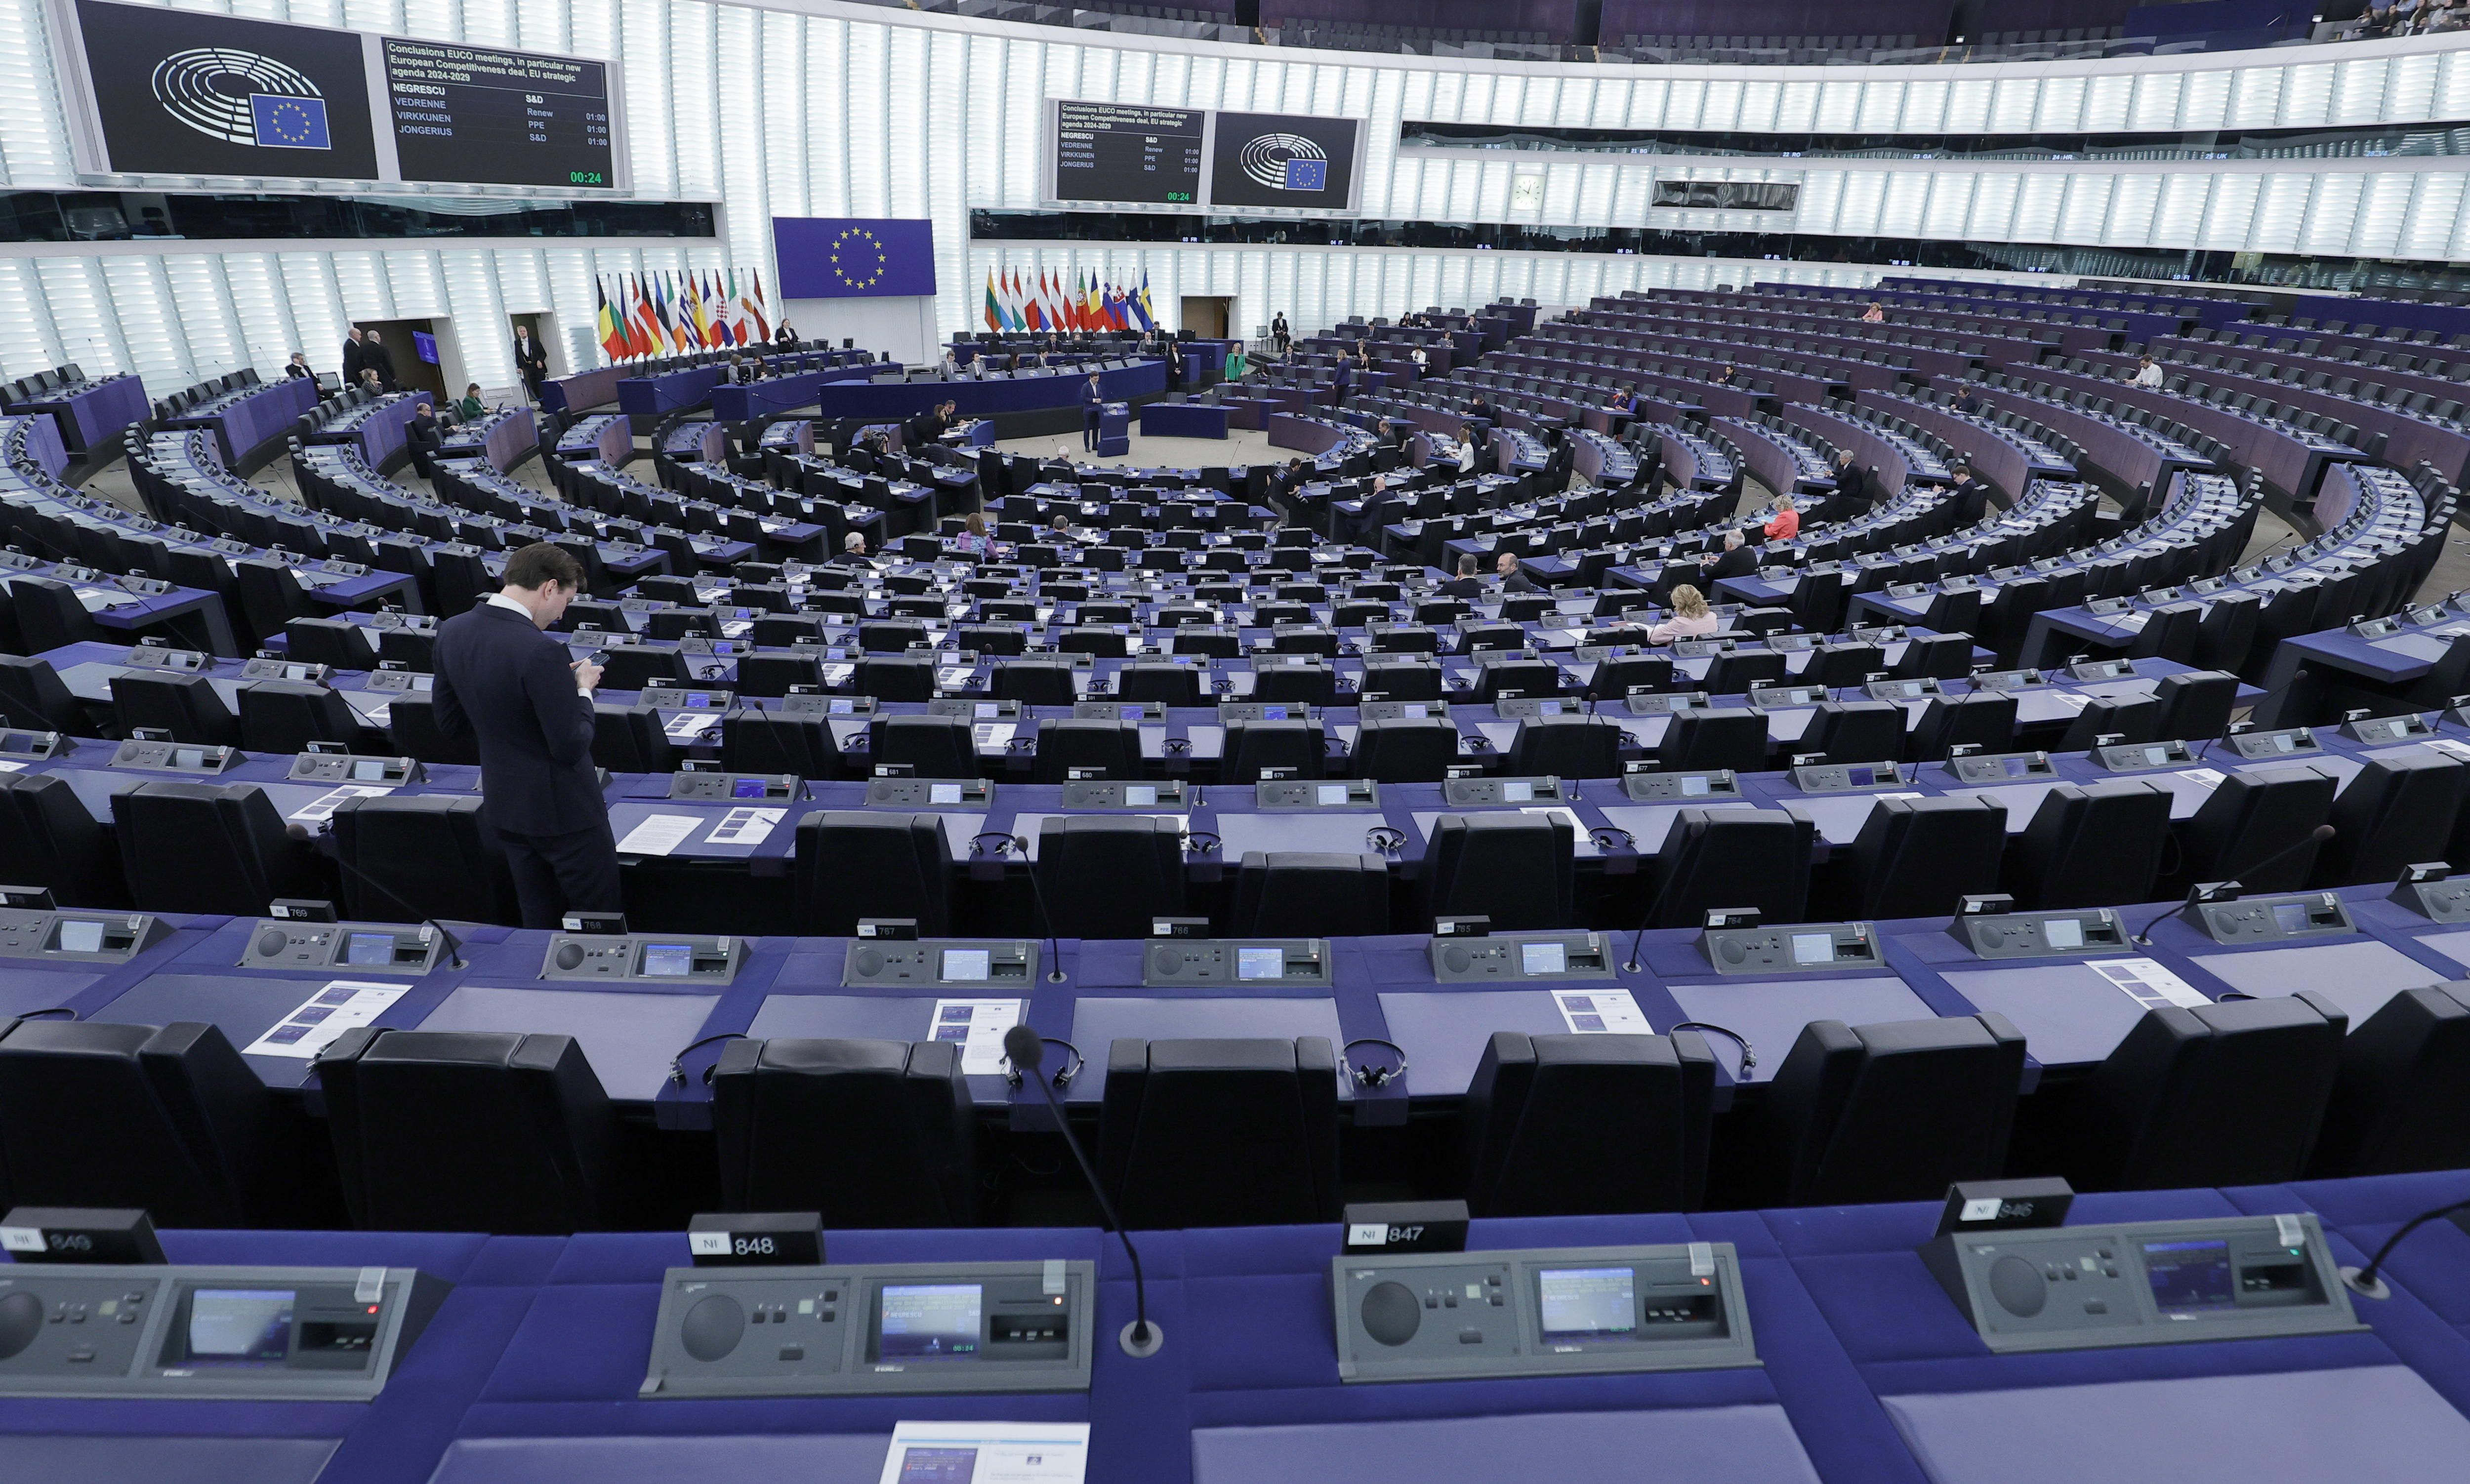 Estrasburgoko parlamentuko ganbera. RONALD WITTEK / EFE